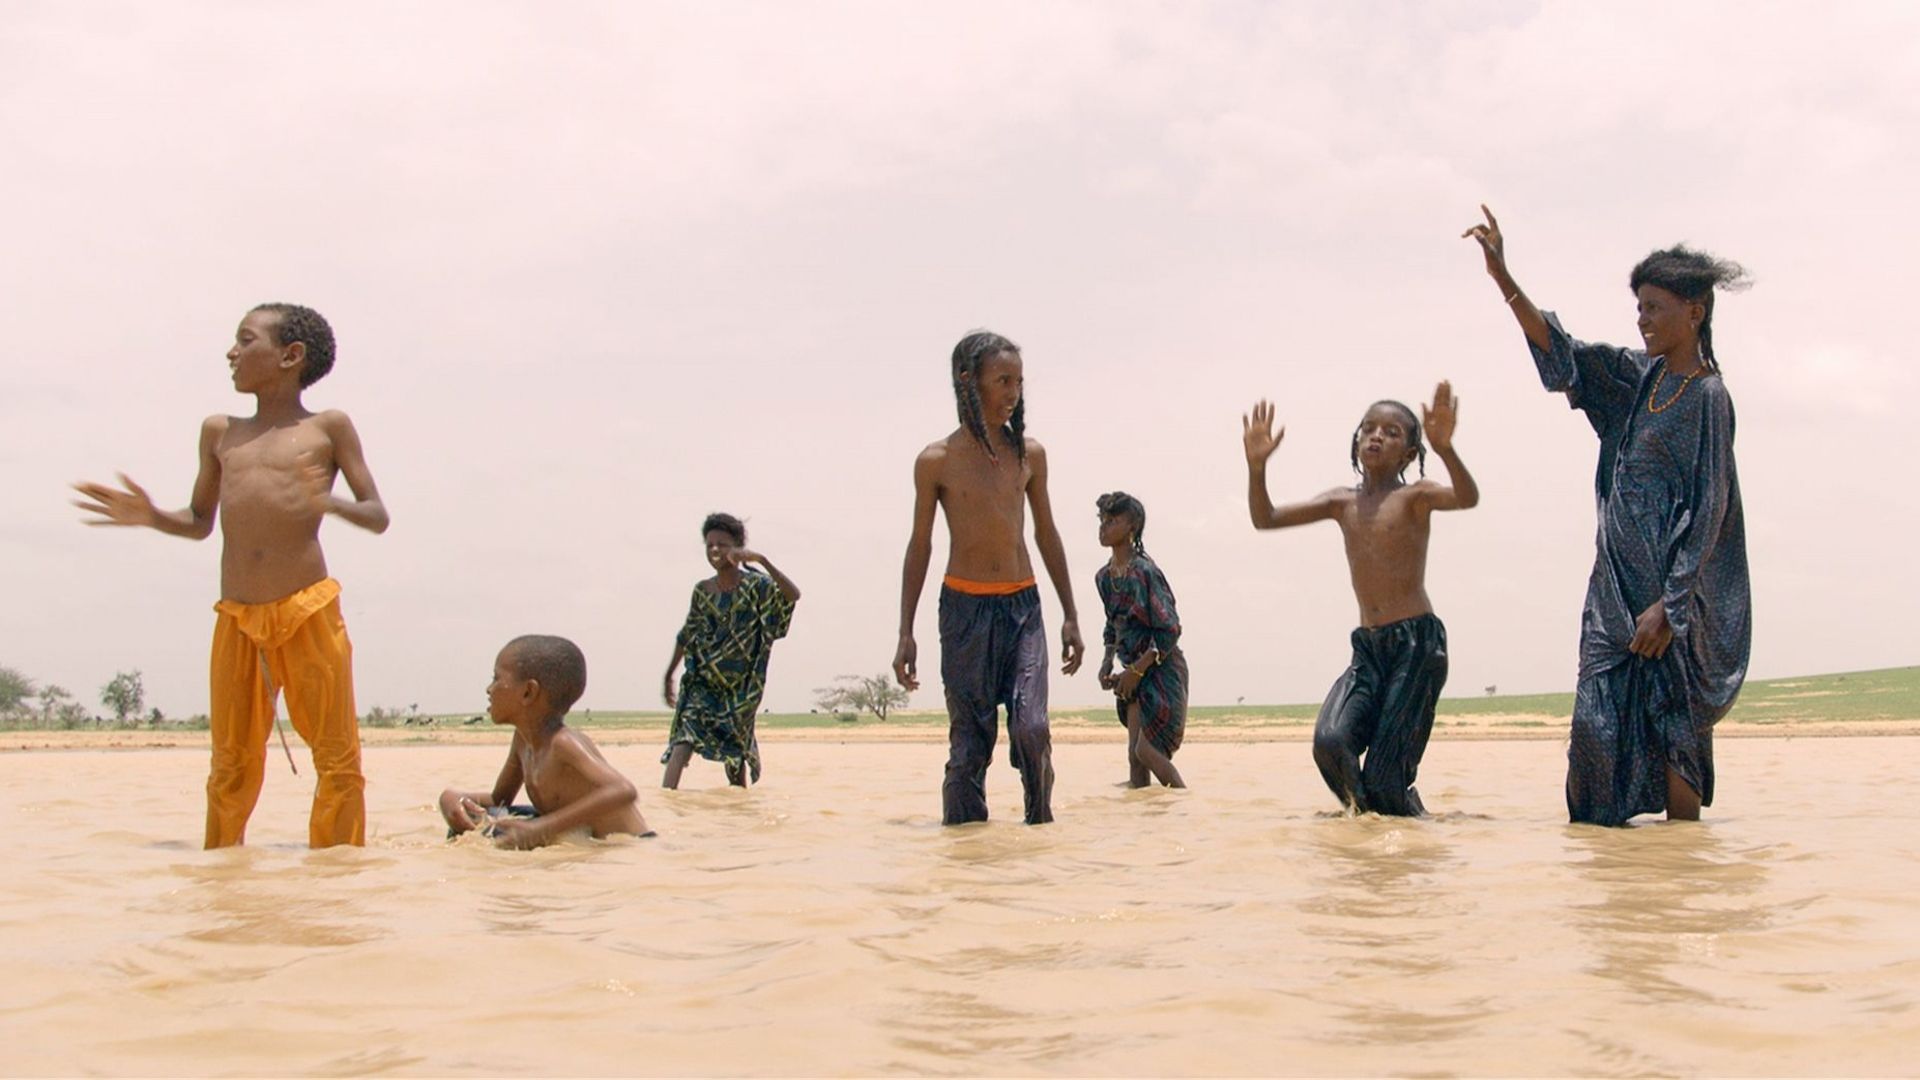 Documentaire : “Marcher sur l'eau”, quand la ressource la plus essentielle vient à manquer